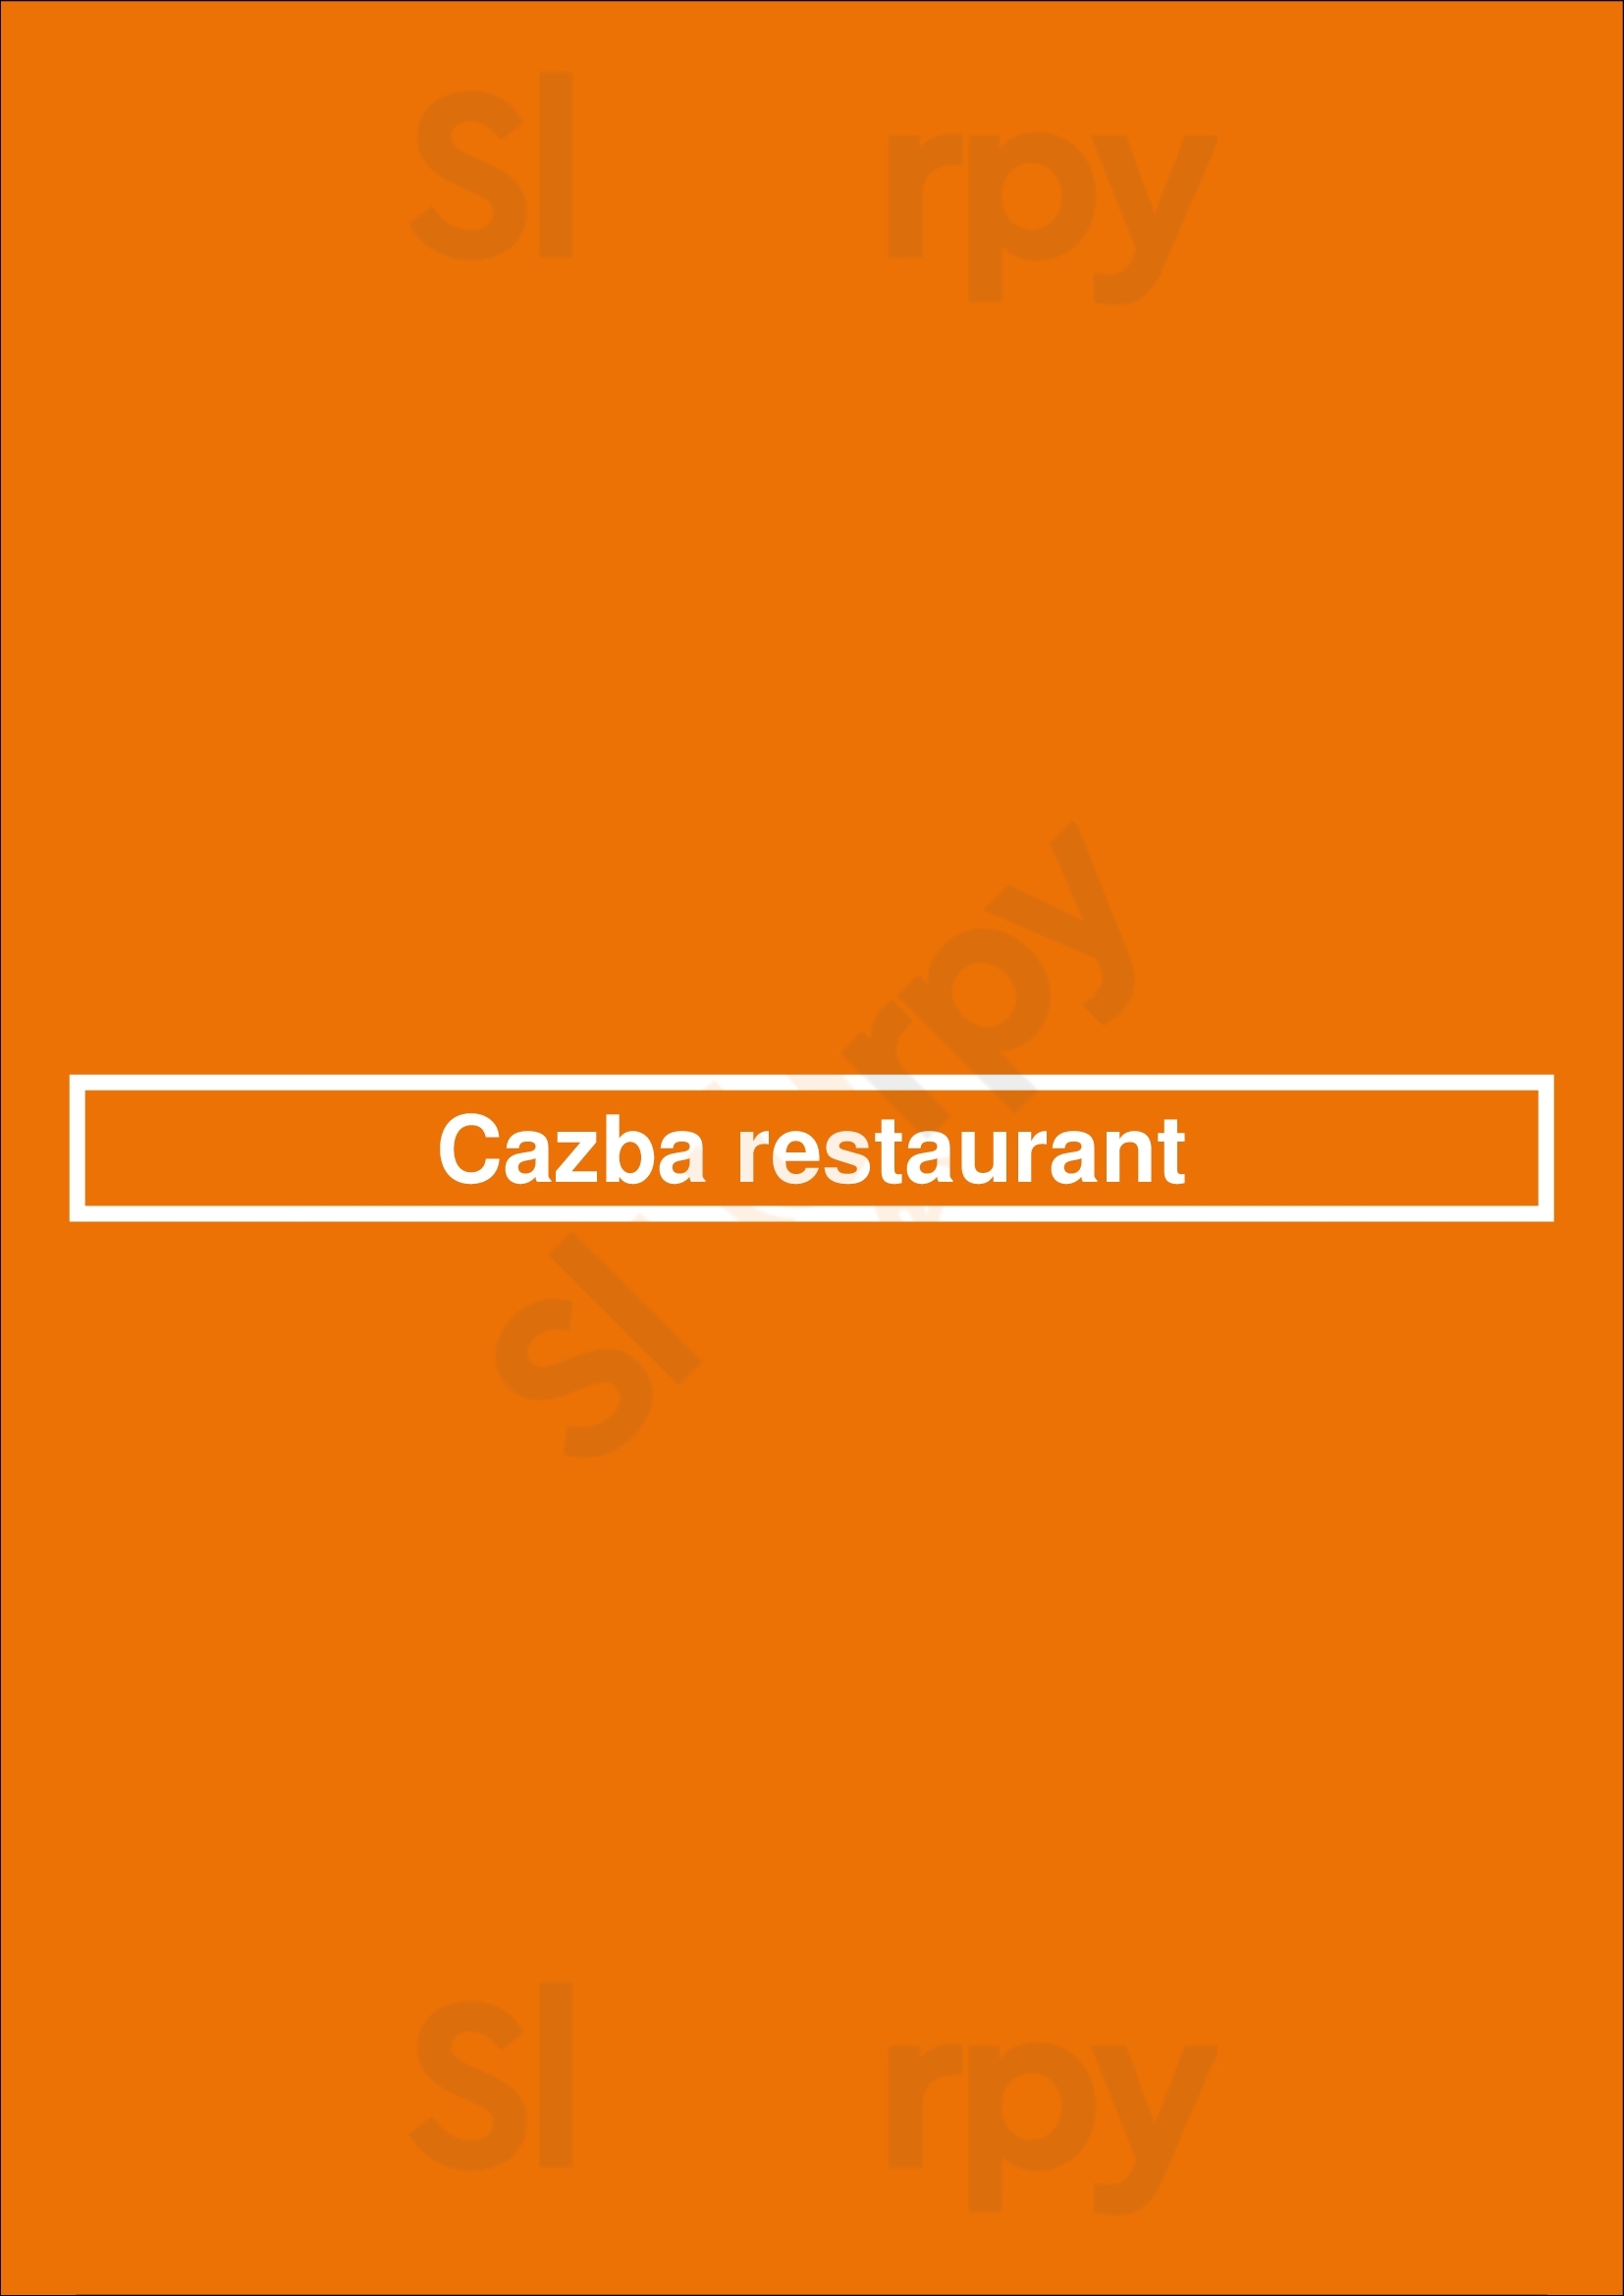 Cazba Restaurant Vancouver Menu - 1